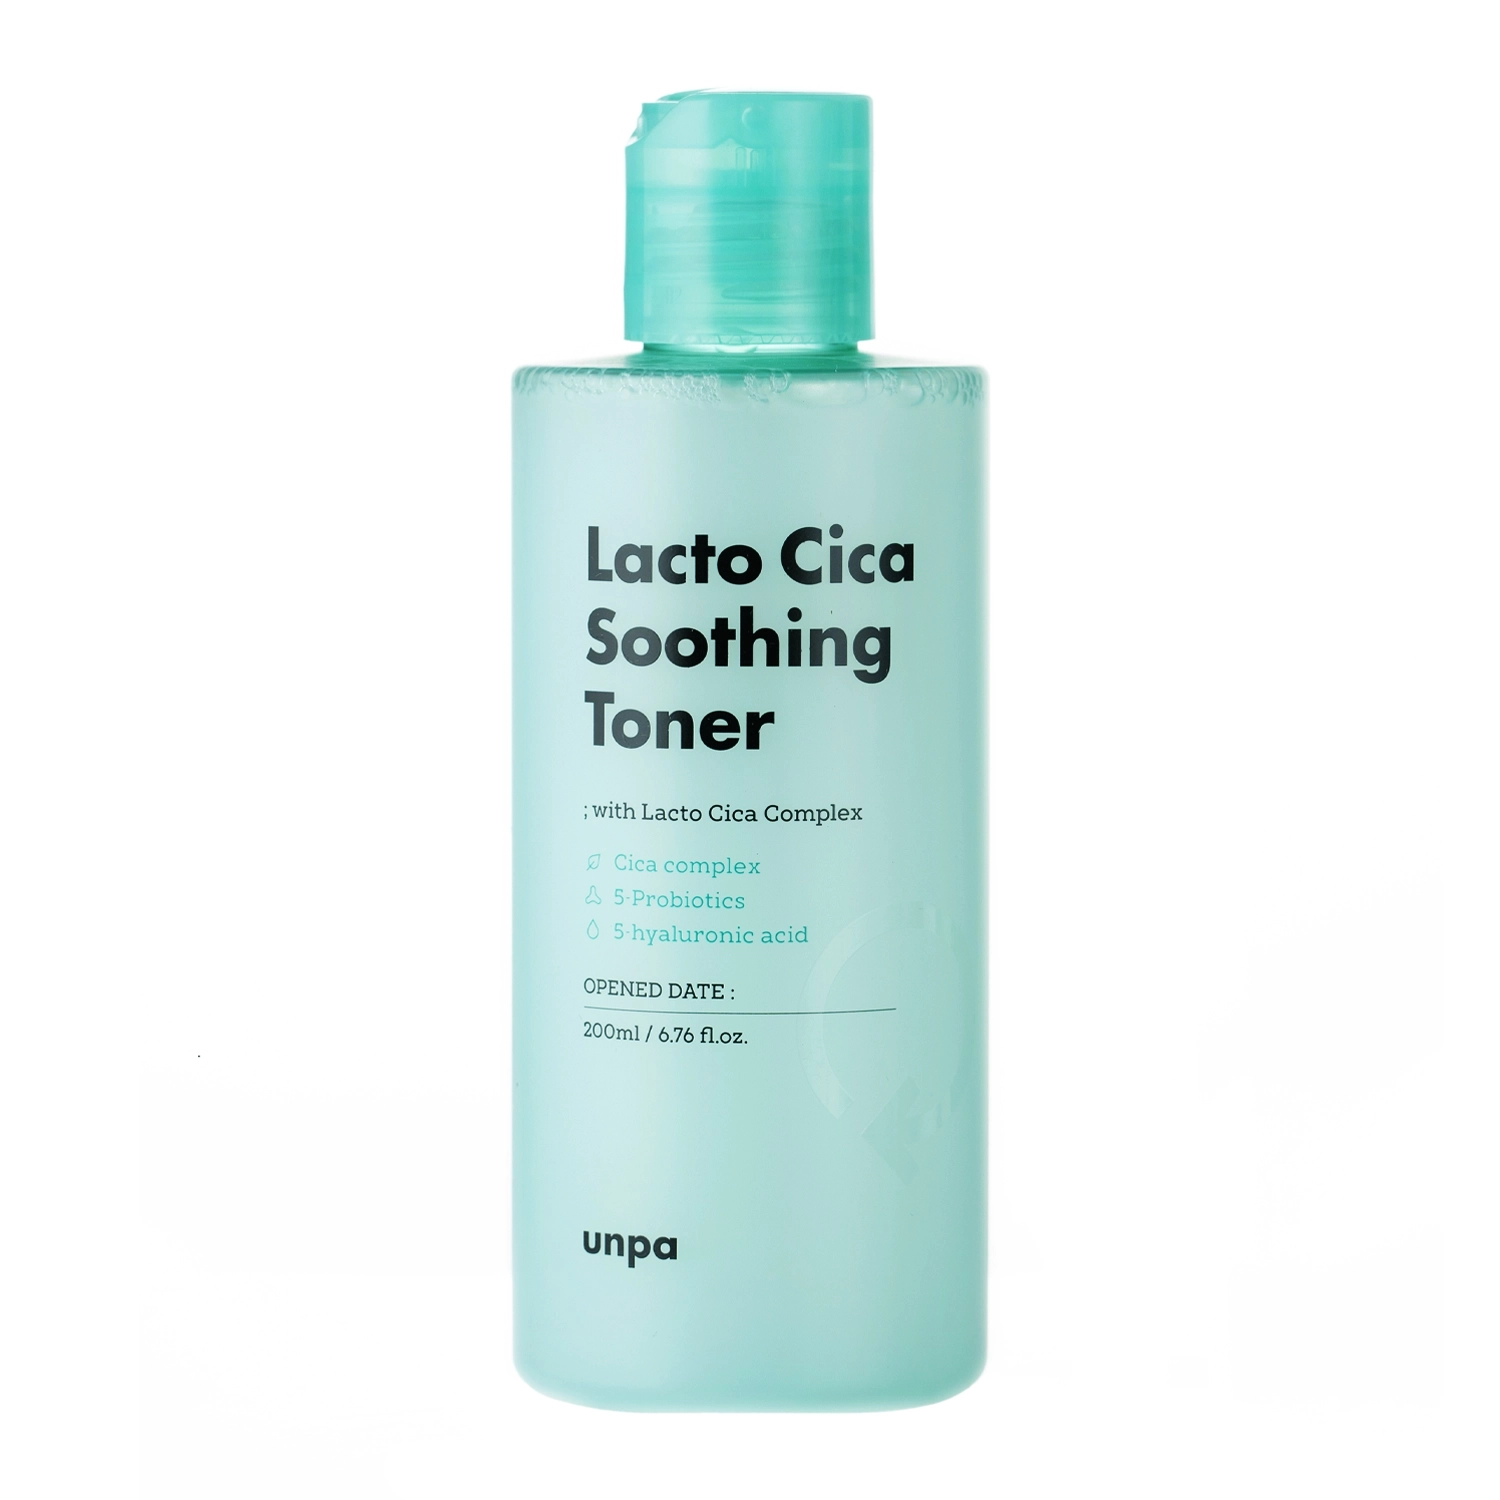 Unpa - Lacto Cica Soothing Toner - Успокаивающий тоник для лица с центеллой азиатской - 200ml